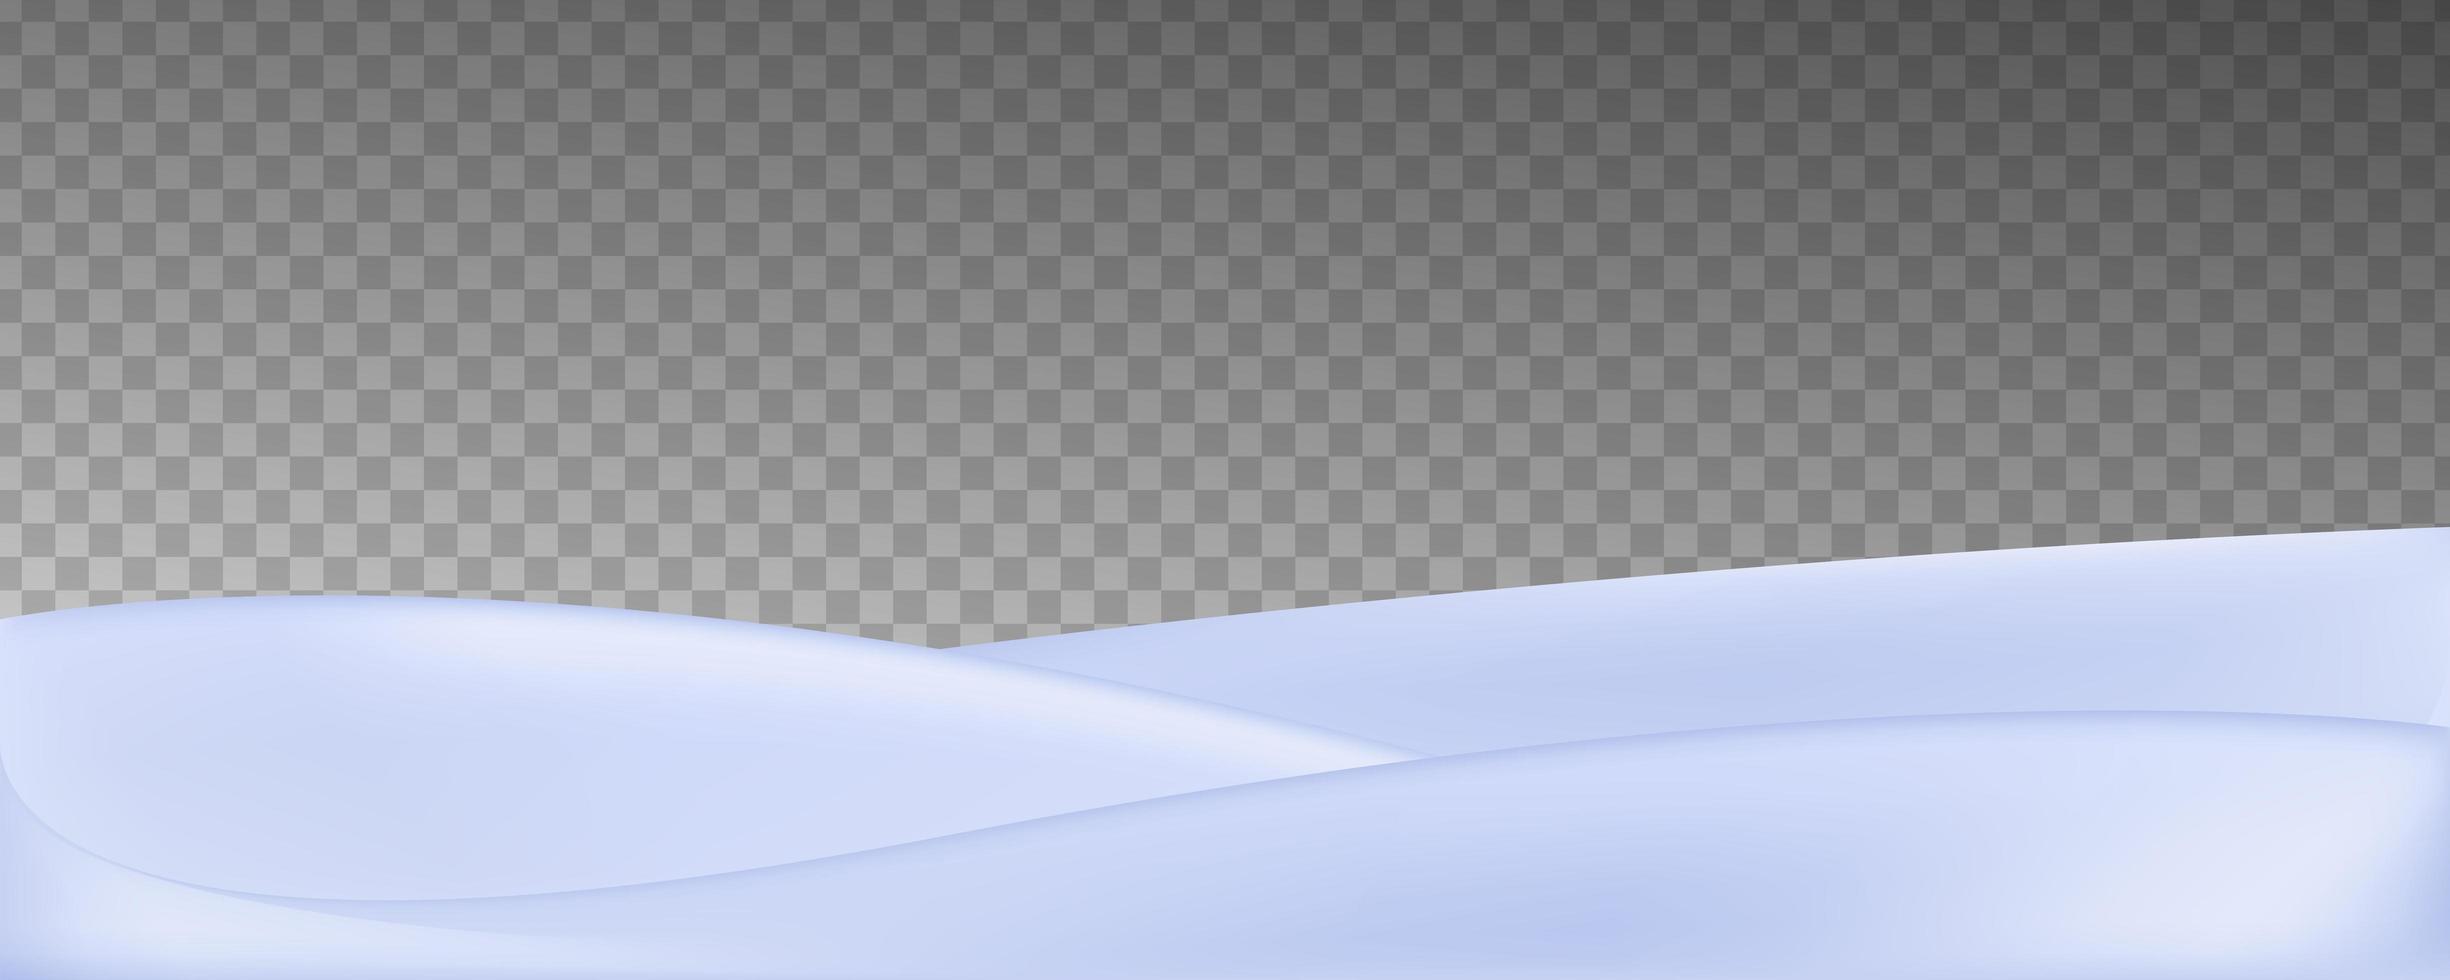 vektor realistiska snöfält isolerad på transparent bakgrund